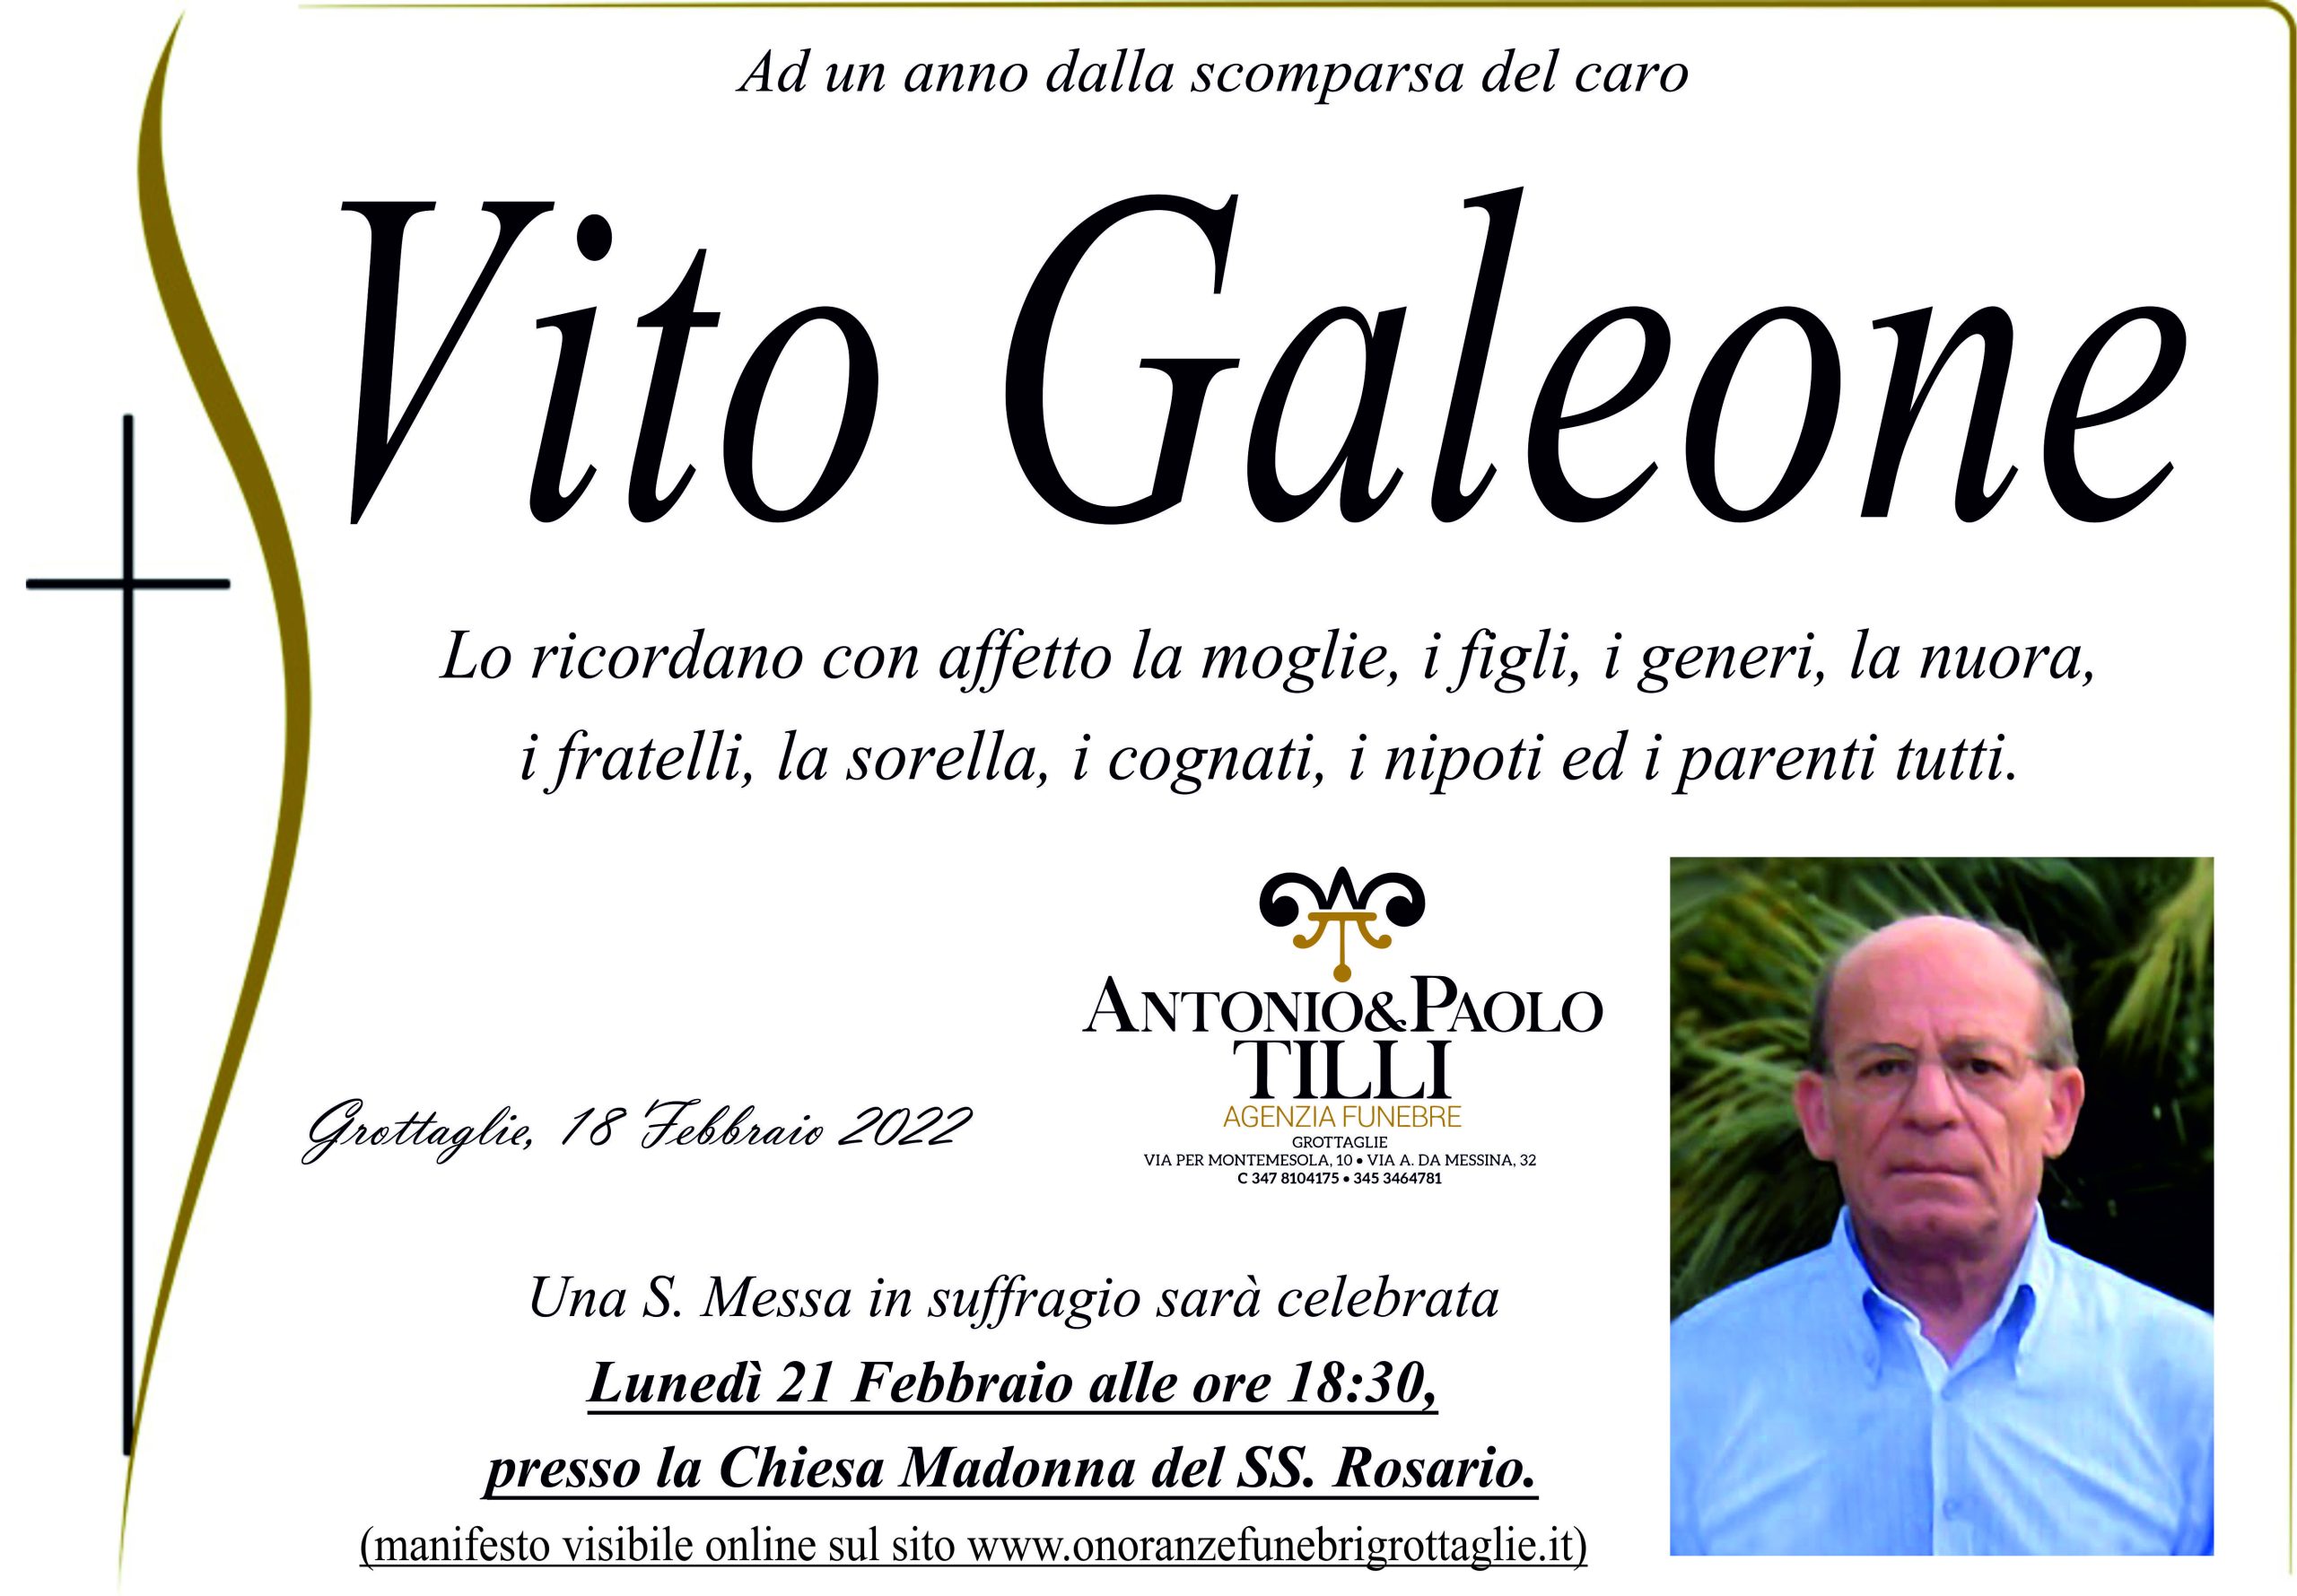 Anniversario Vito Galeone